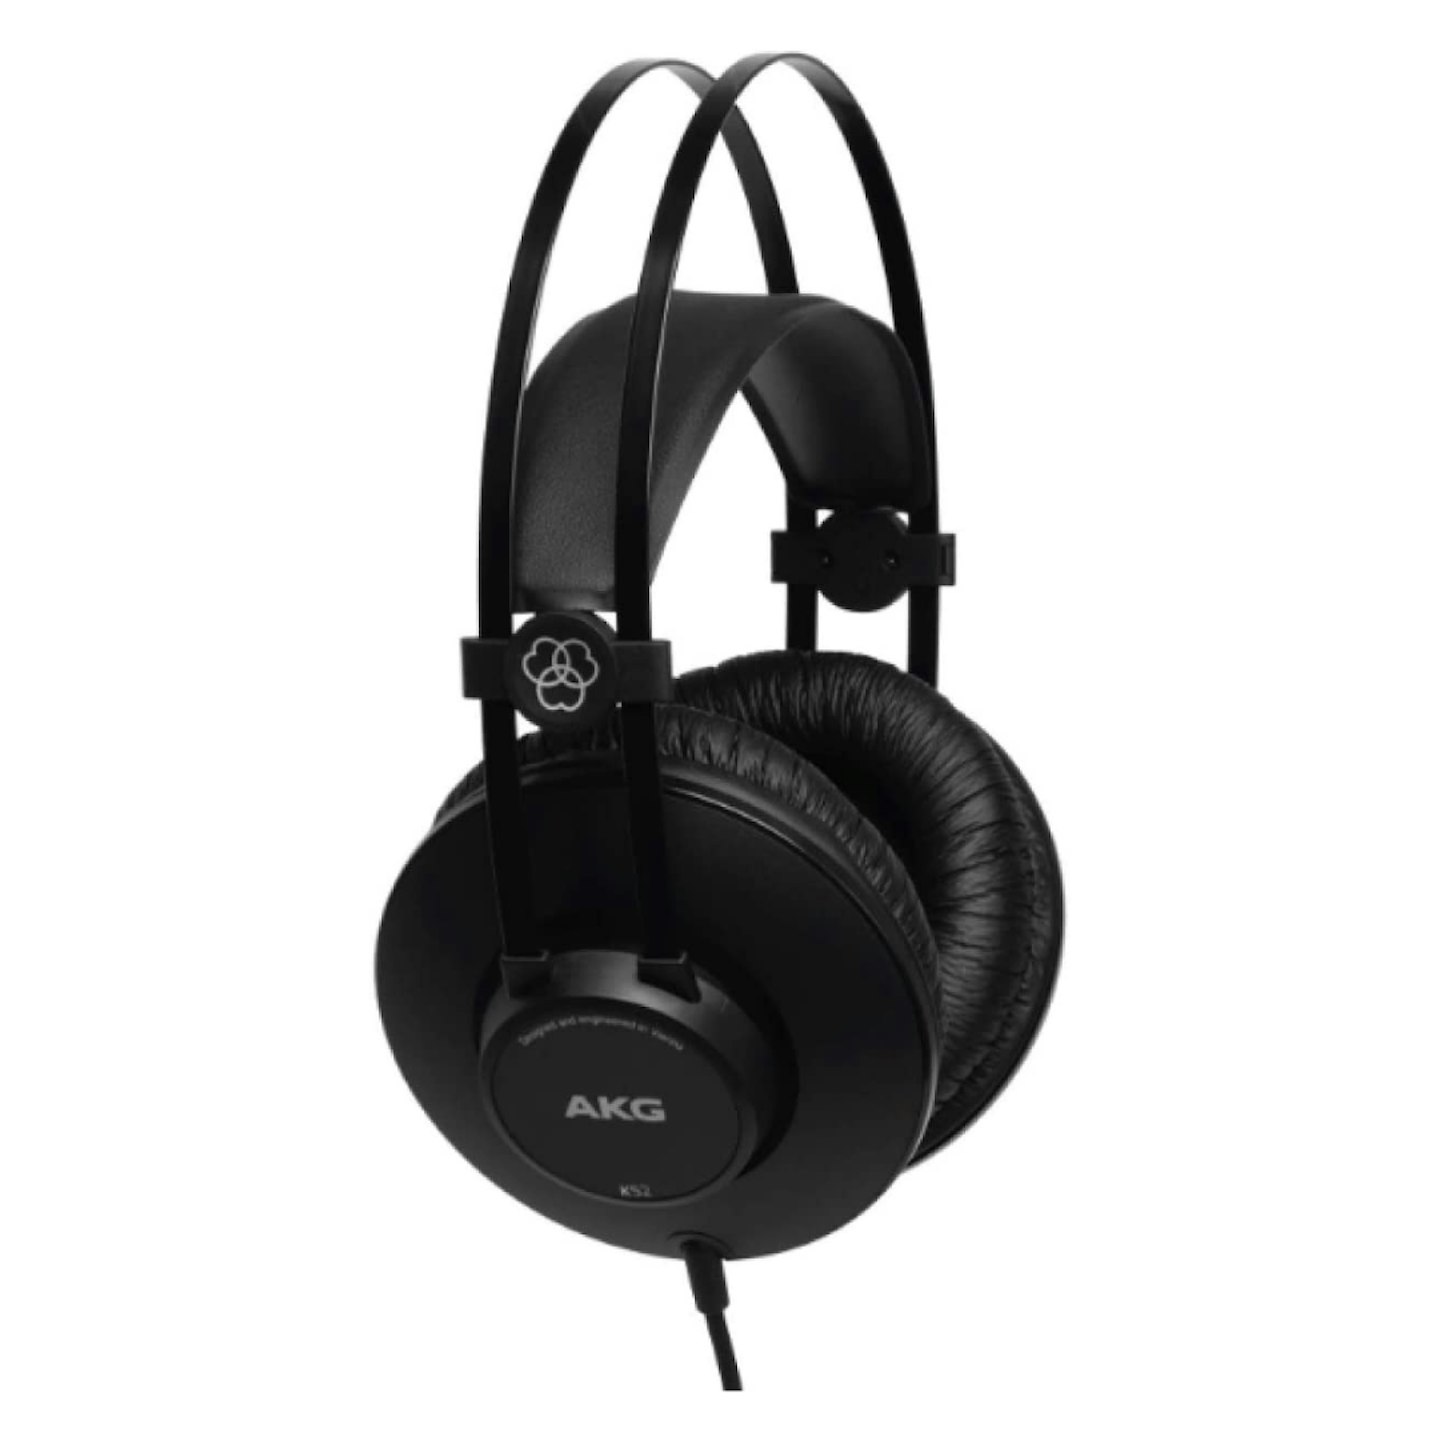 AKG K52 studio headphones